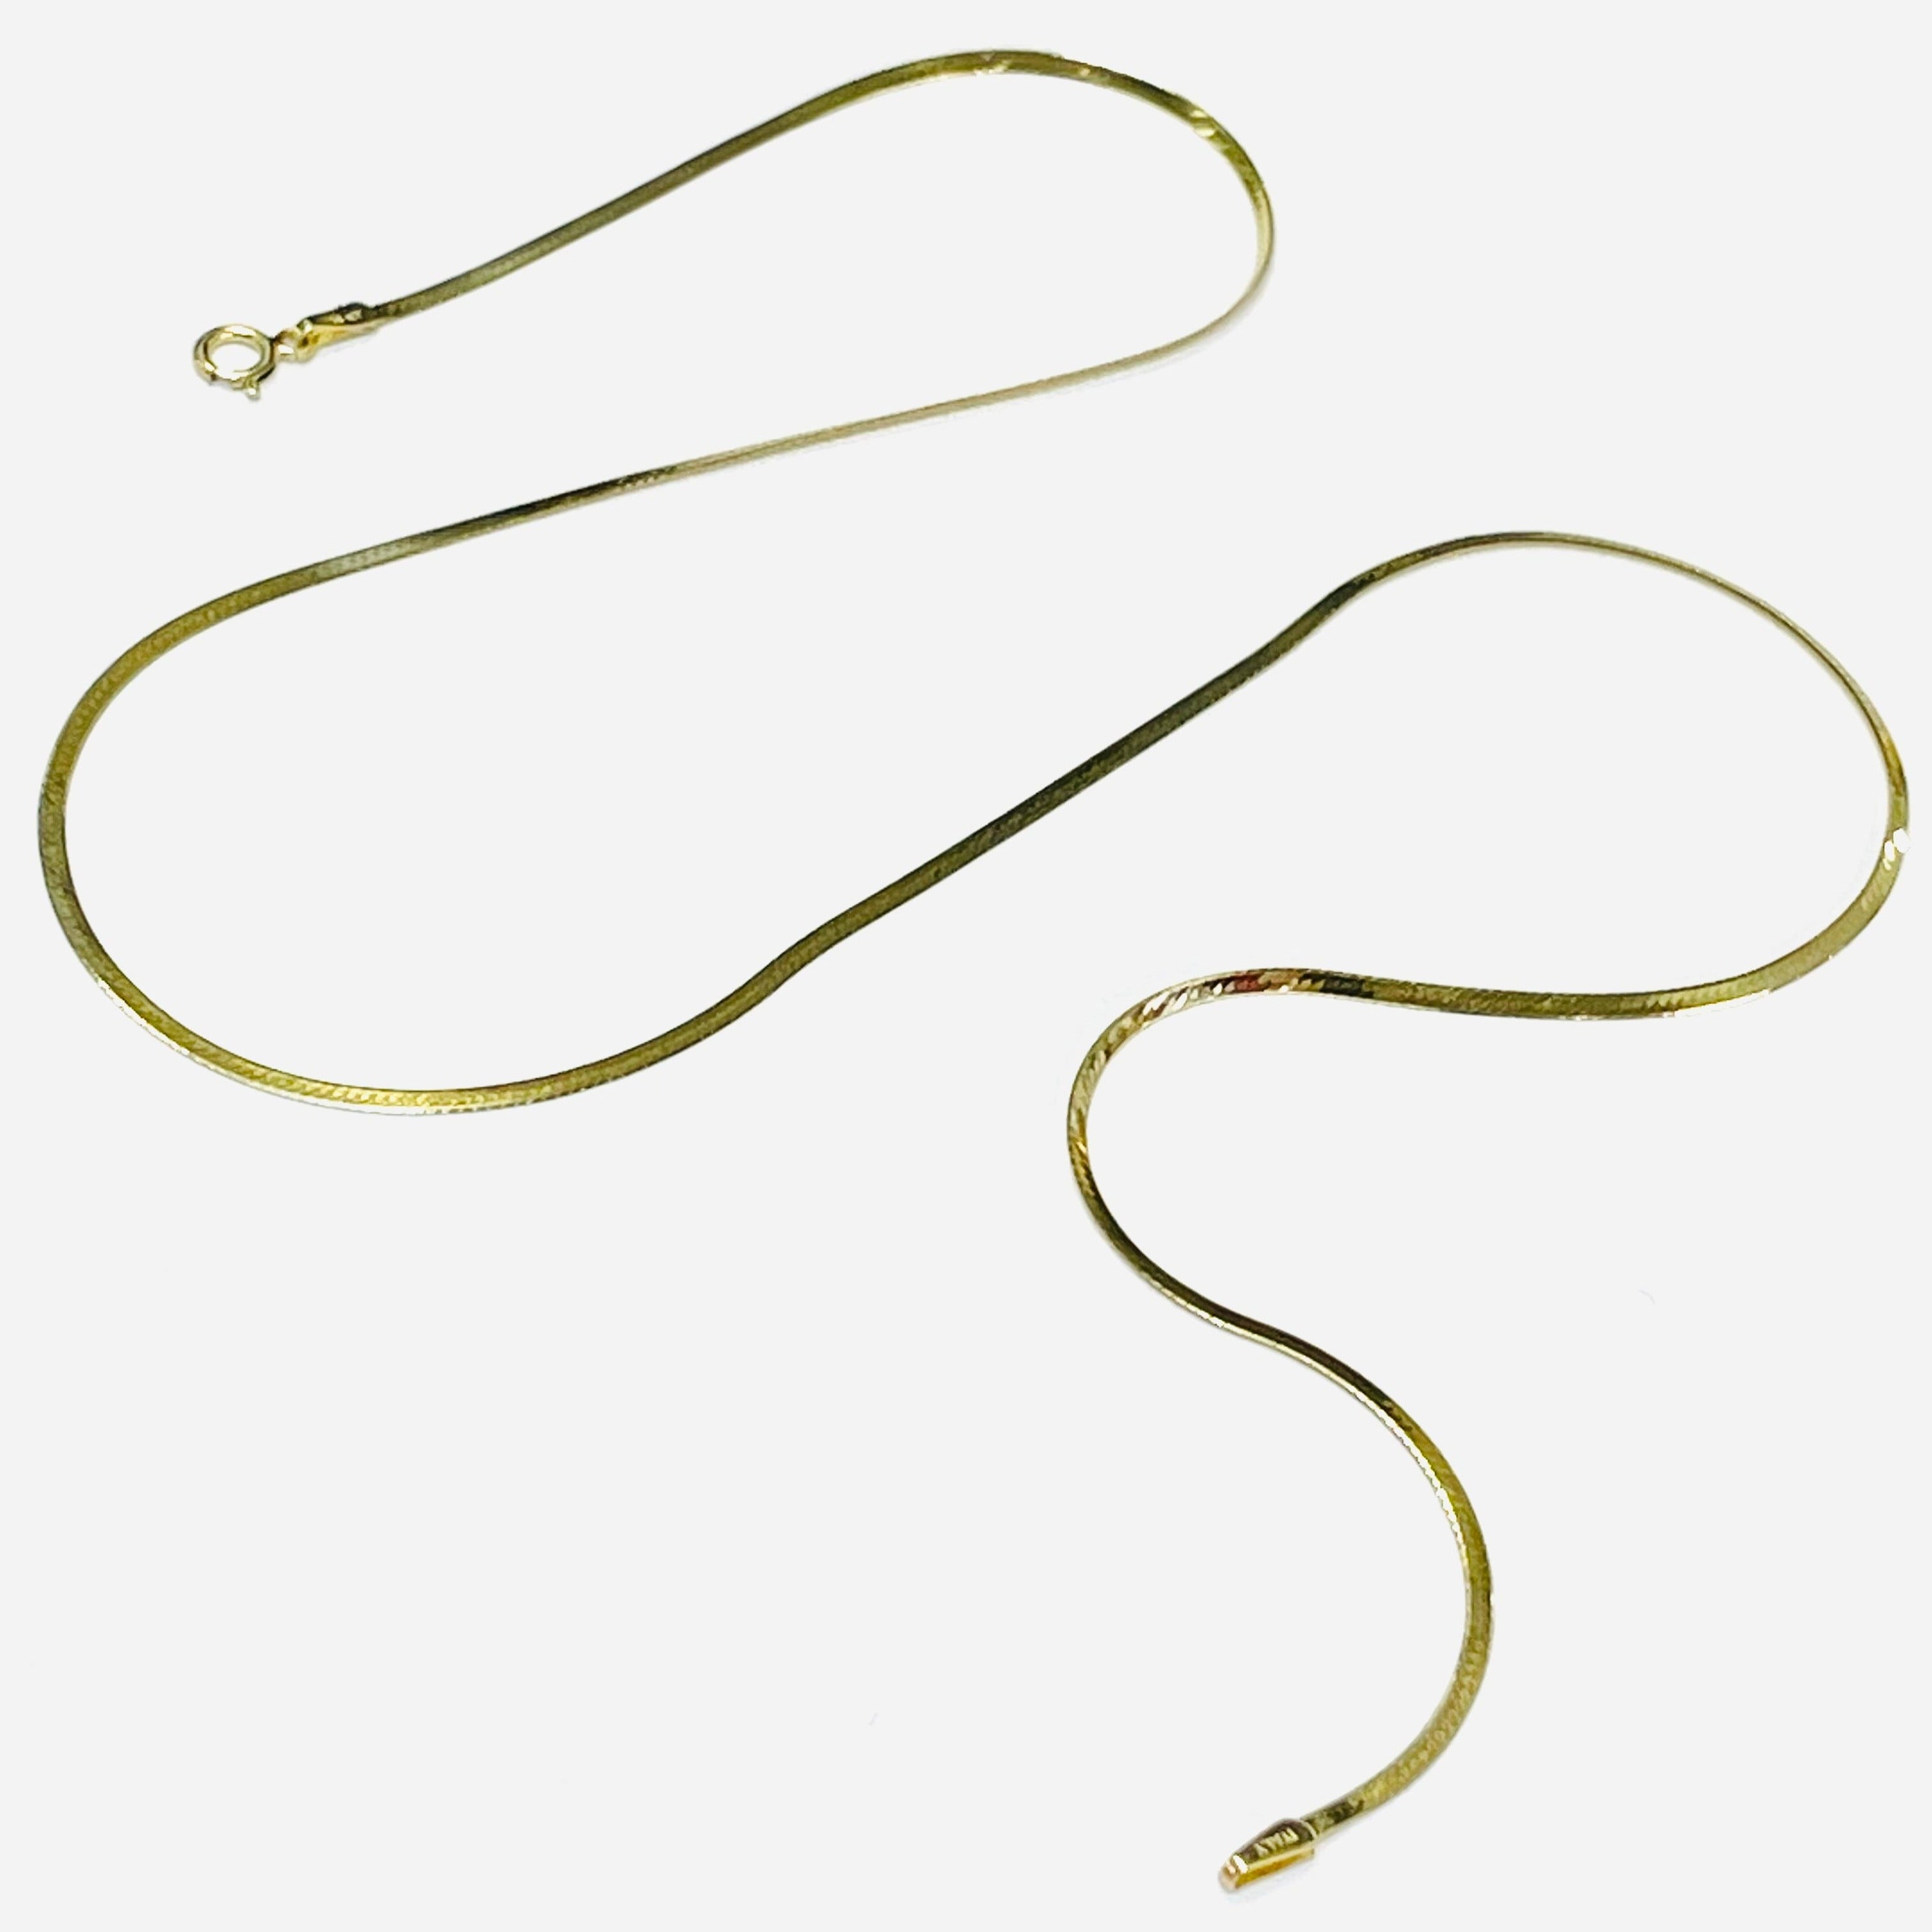 20" 1.3mm 14K Yellow Gold Herringbone Chain Necklace